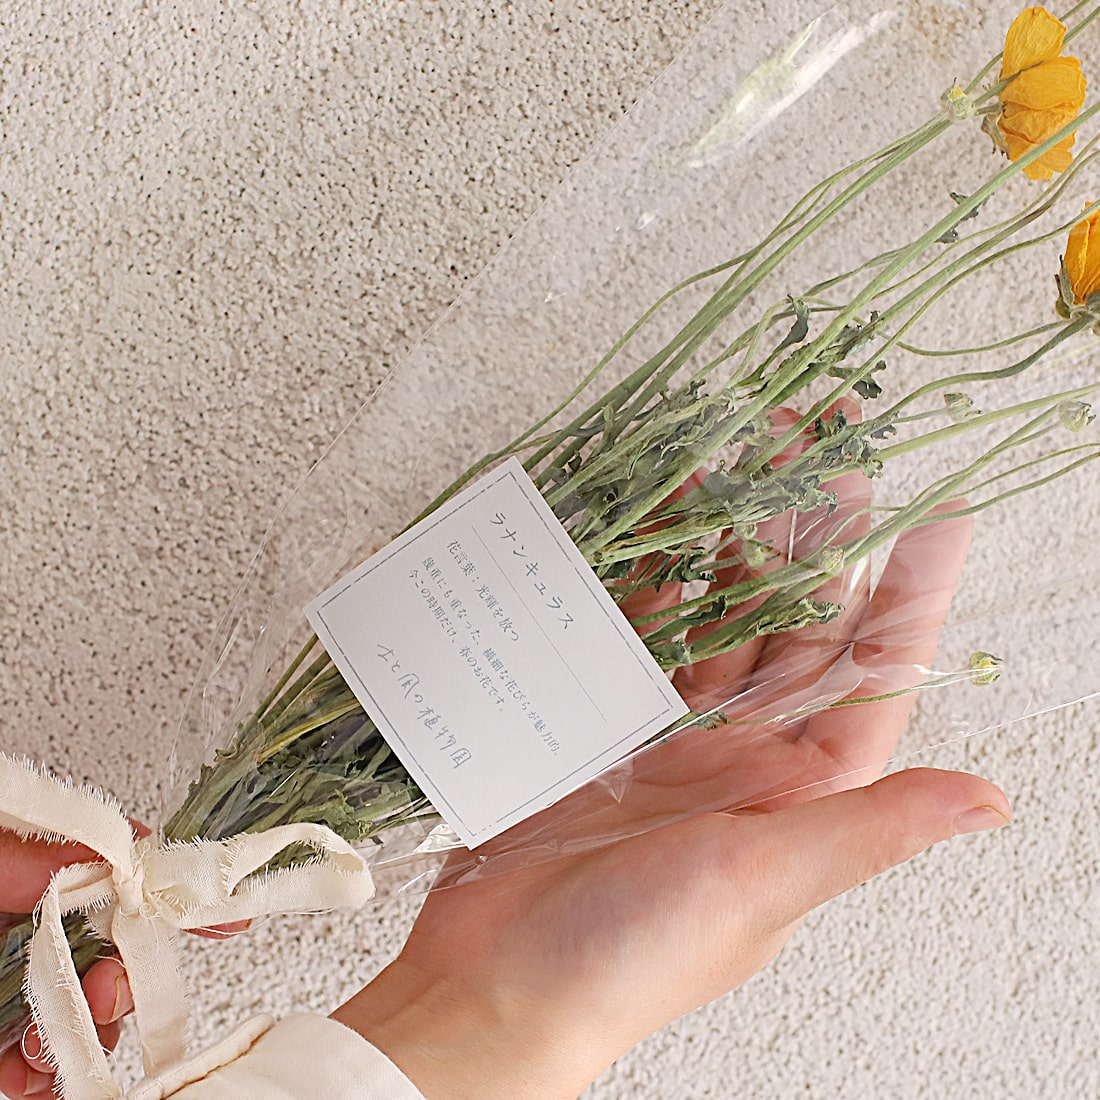 花言葉を贈る ドライフラワーのブーケ ラナンキュラス 光輝を放つ 商品ページ 土と風の植物園